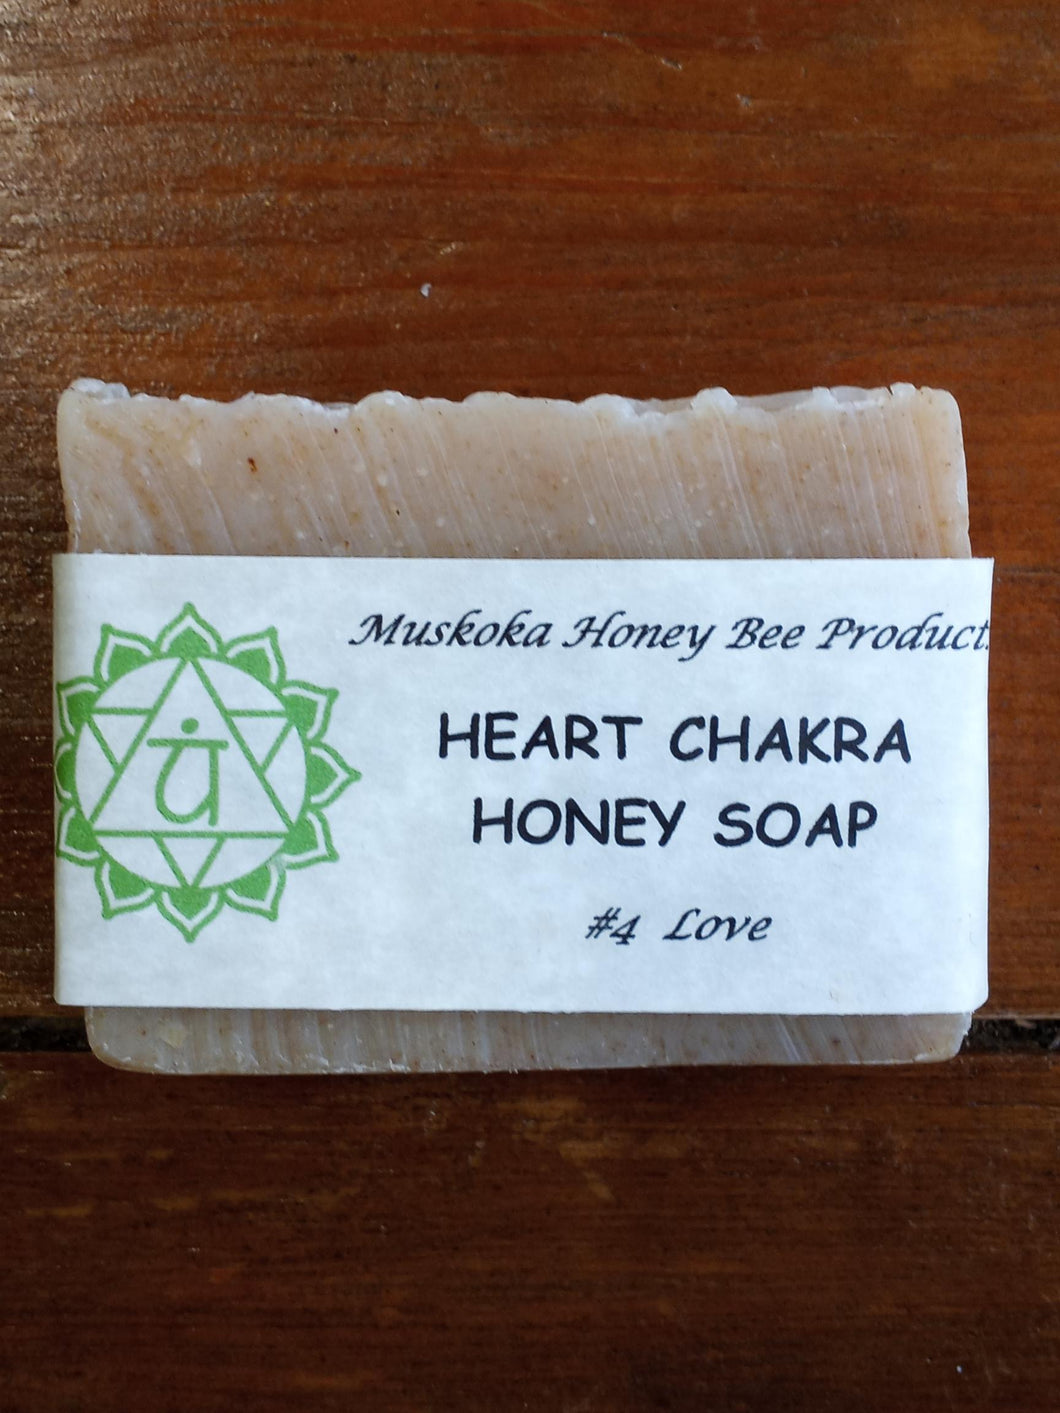 #4 - Heart Chakra Honey Soap (Love)